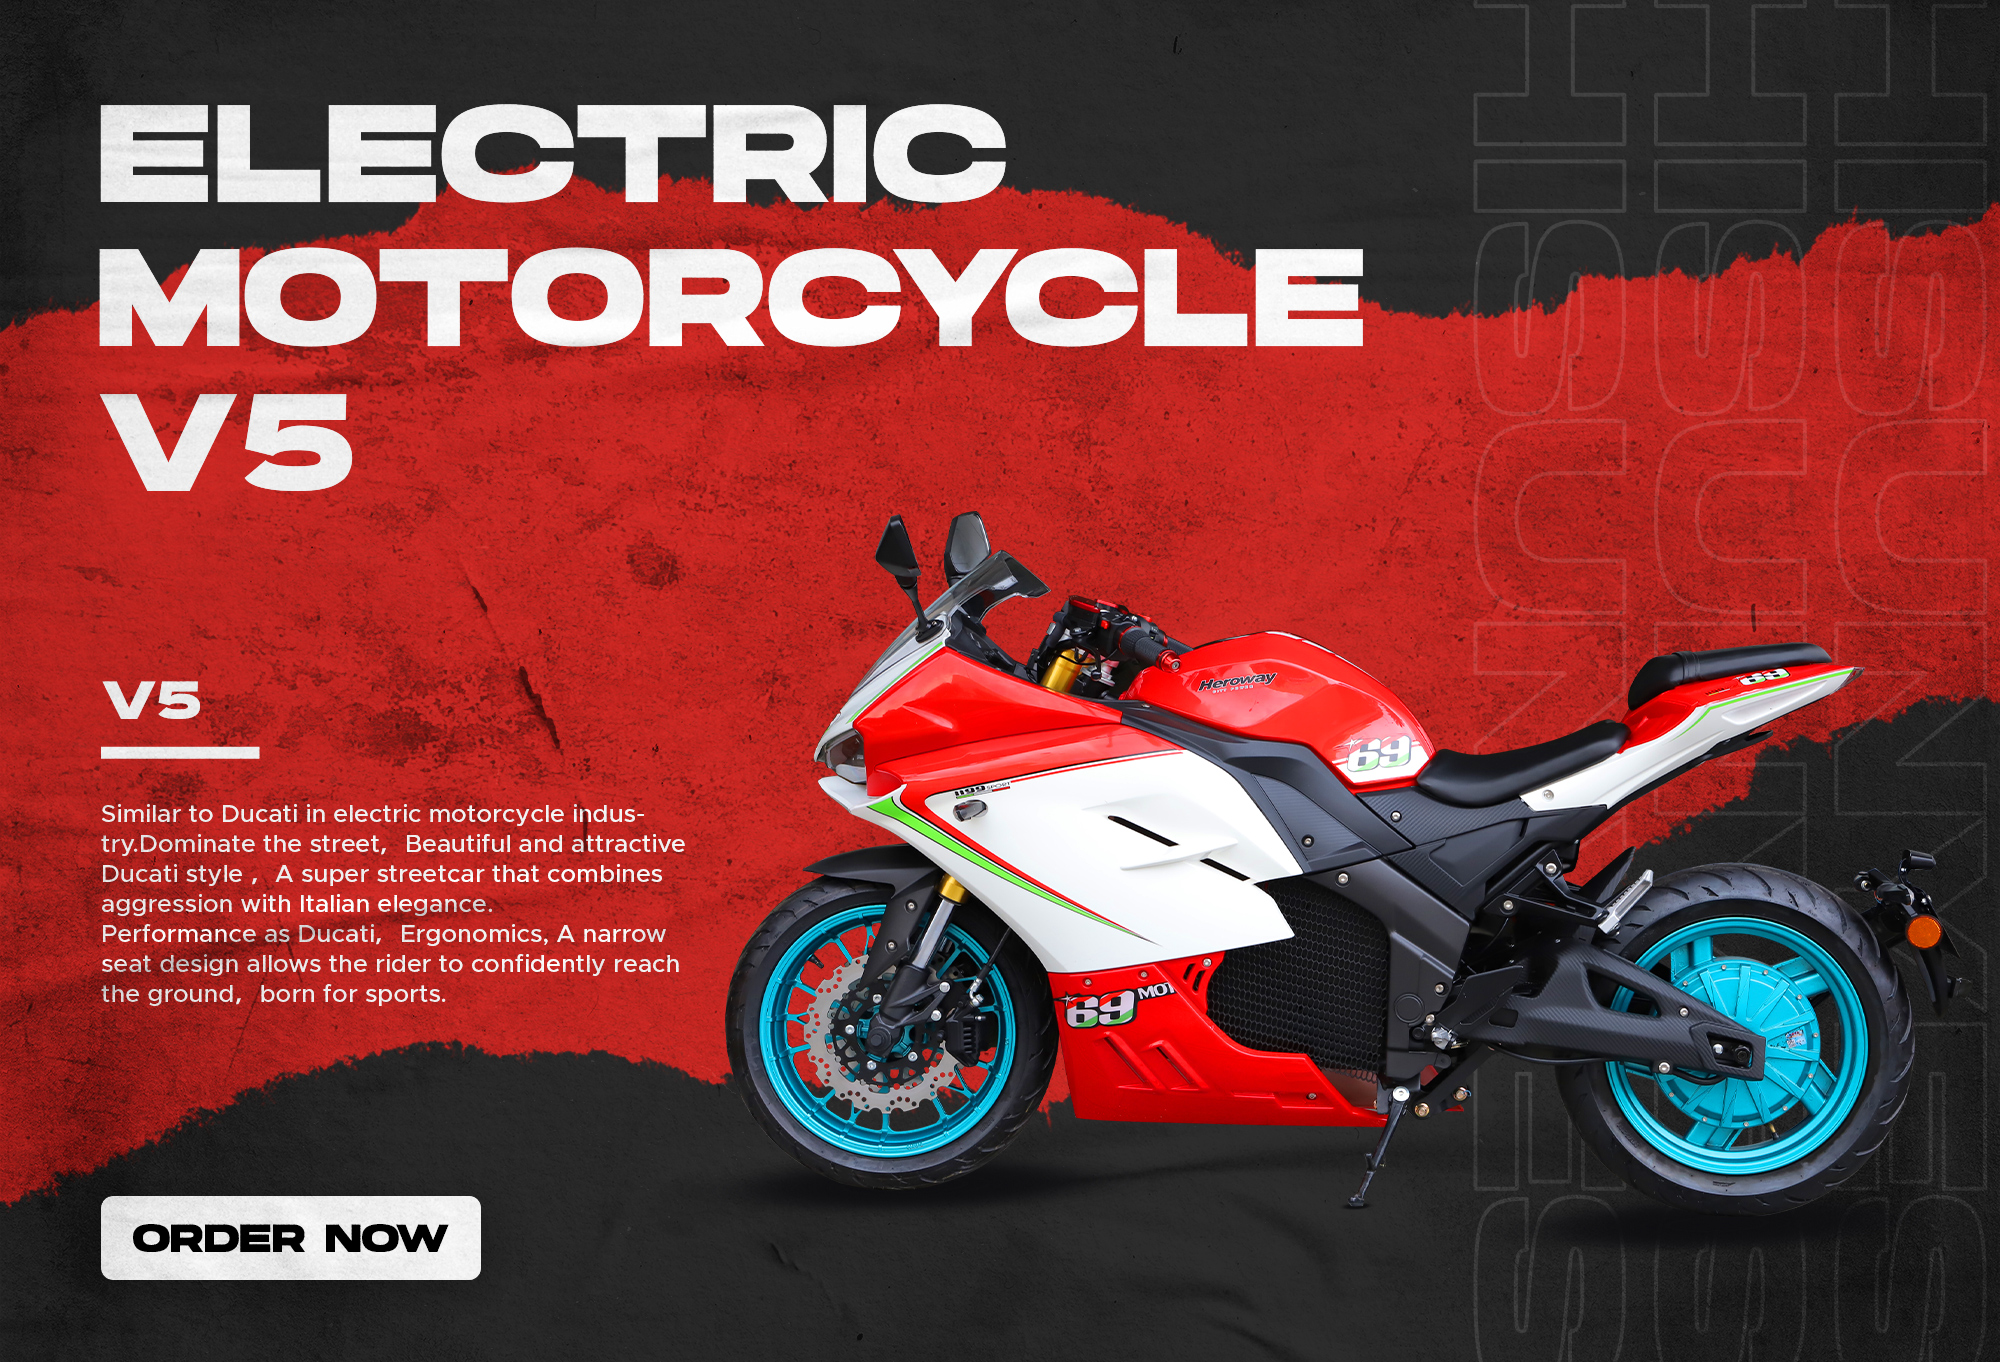 A motocicleta elétrica V5 tem configurações diferentes